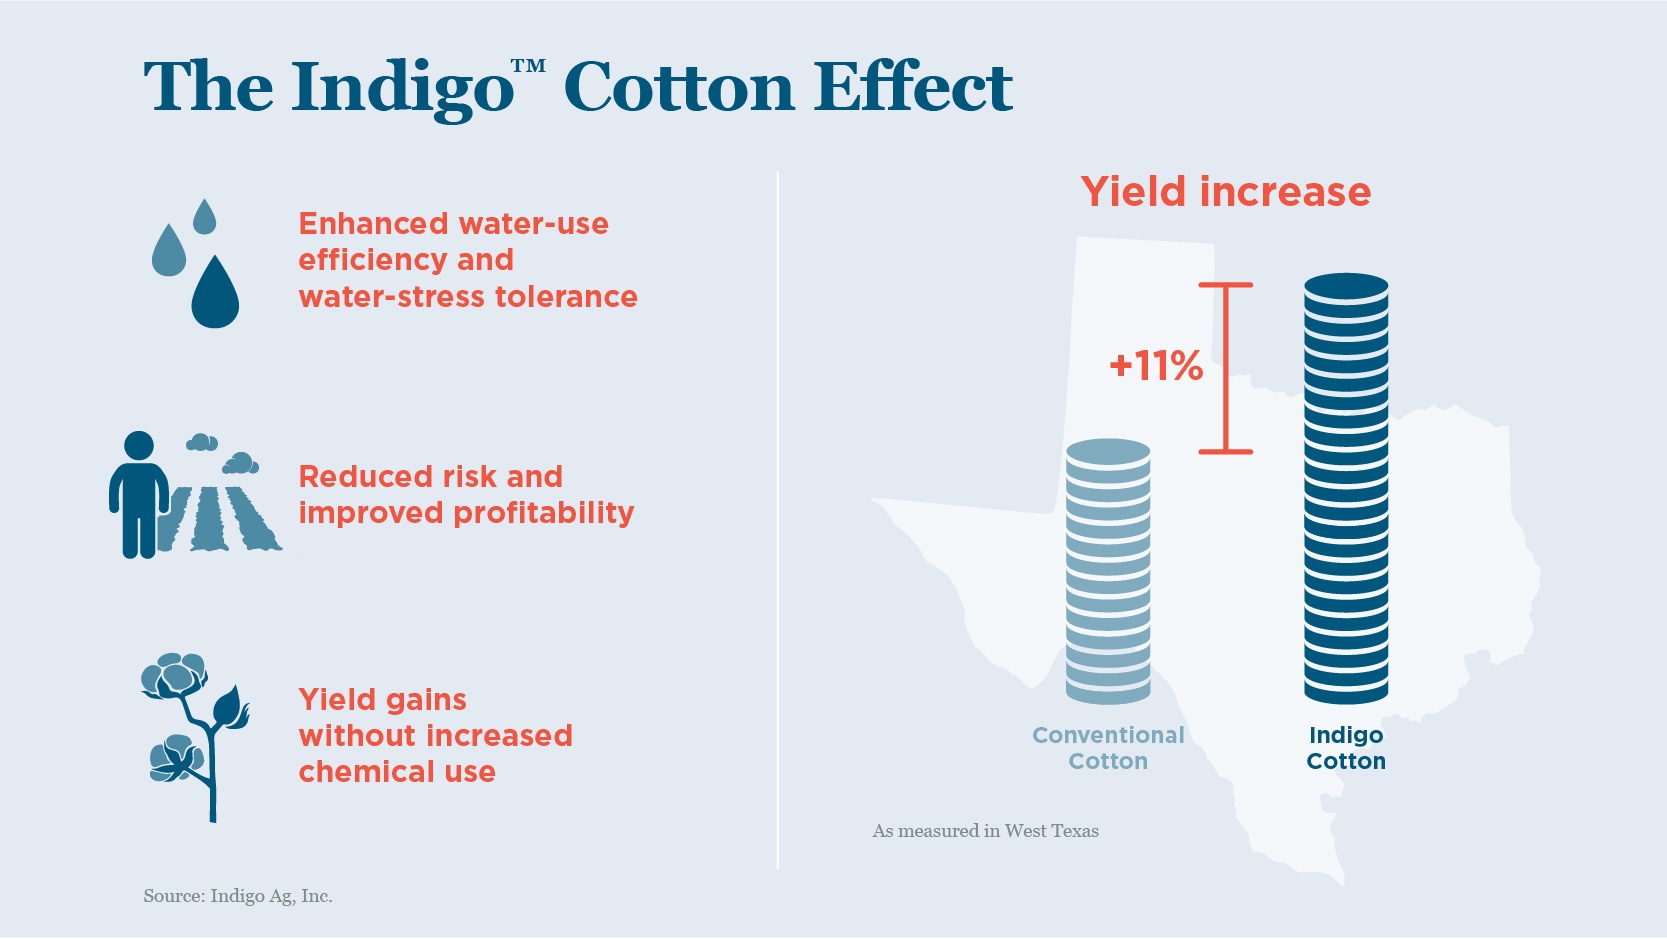 The Indigo Cotton Effect